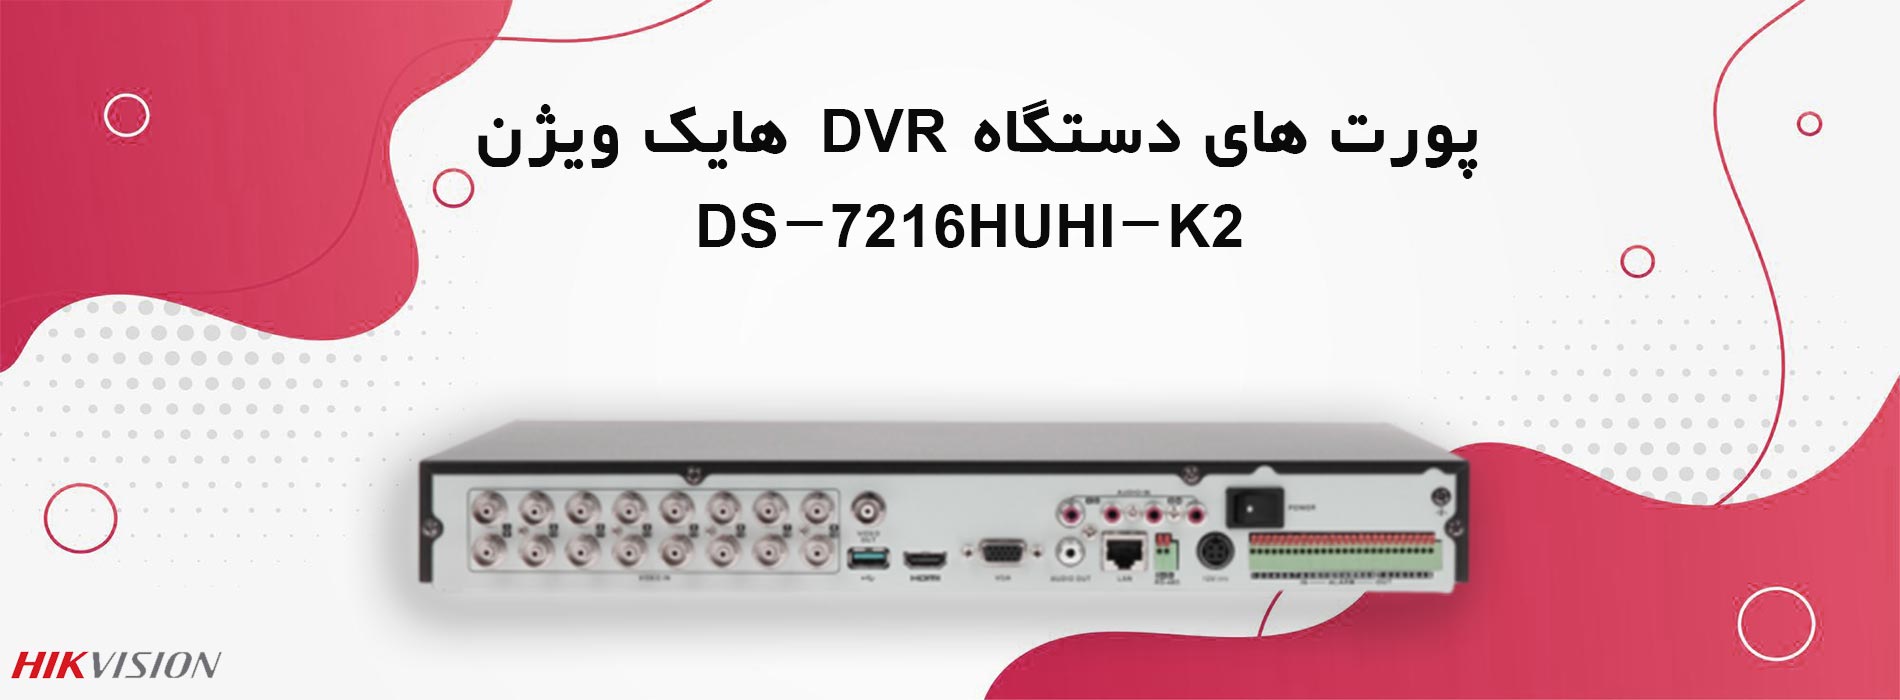 پورت های دستگاه DVR هایک ویژن DS-7216HUHI-K2